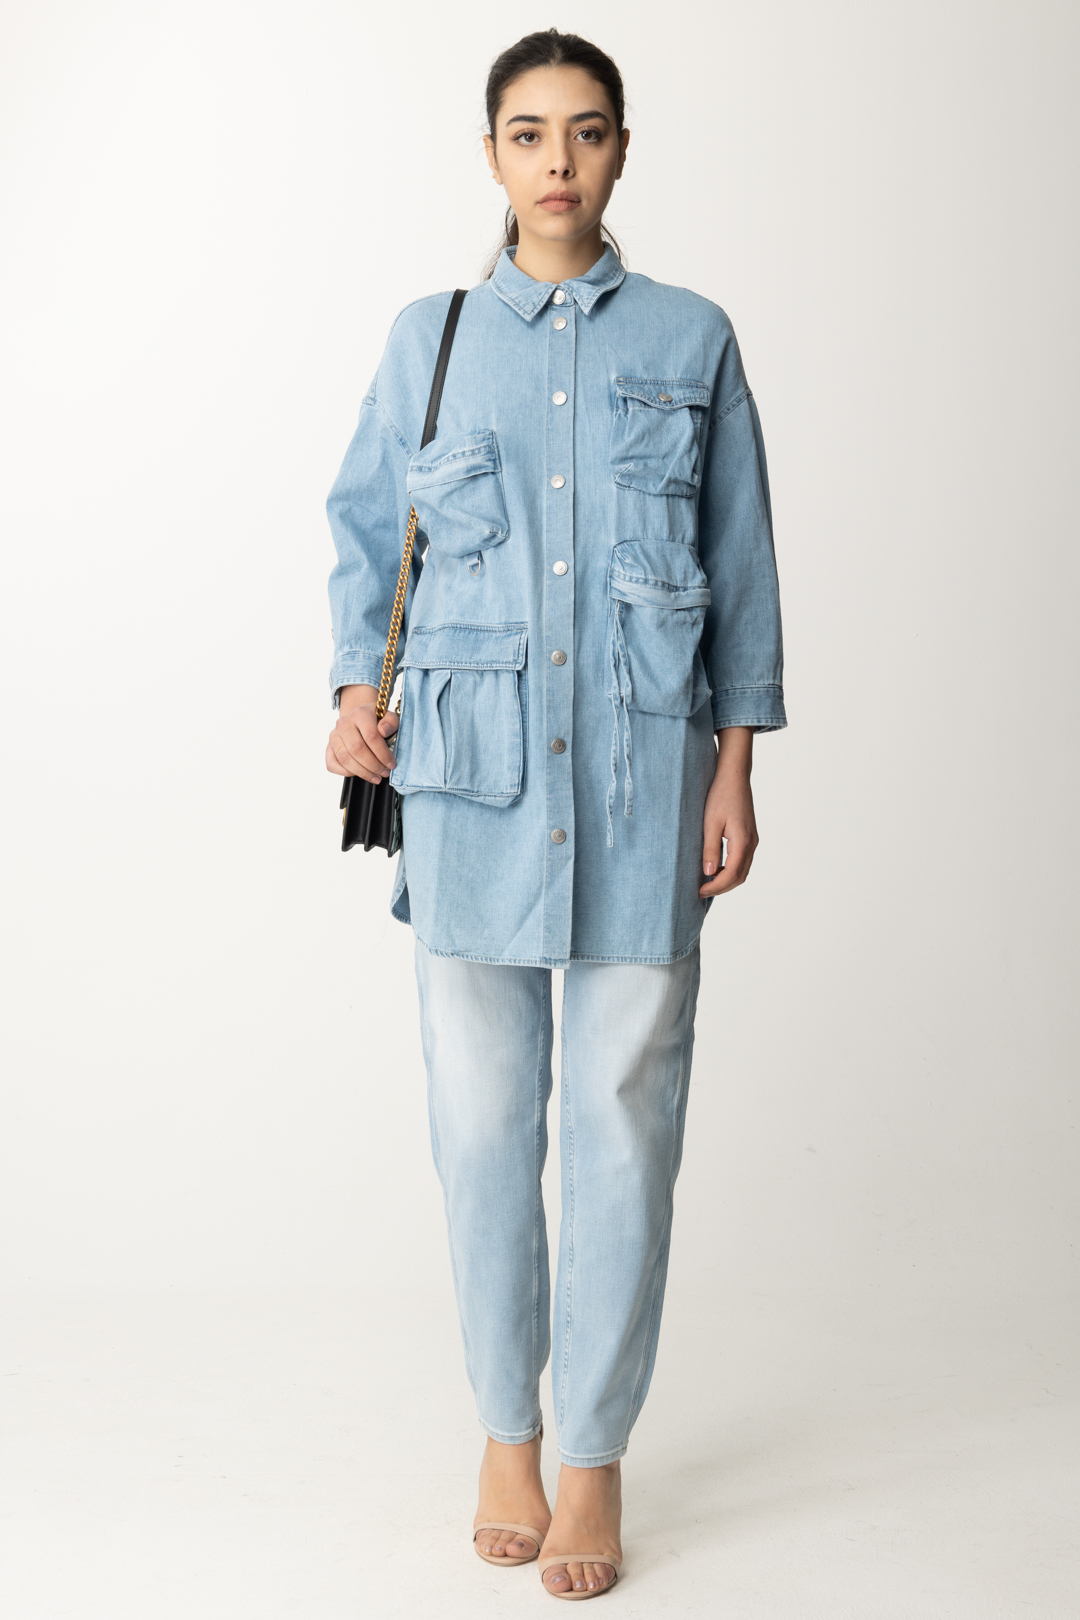 Vorschau: Replay Maxi-Jeanshemd mit großen Taschen Light blue